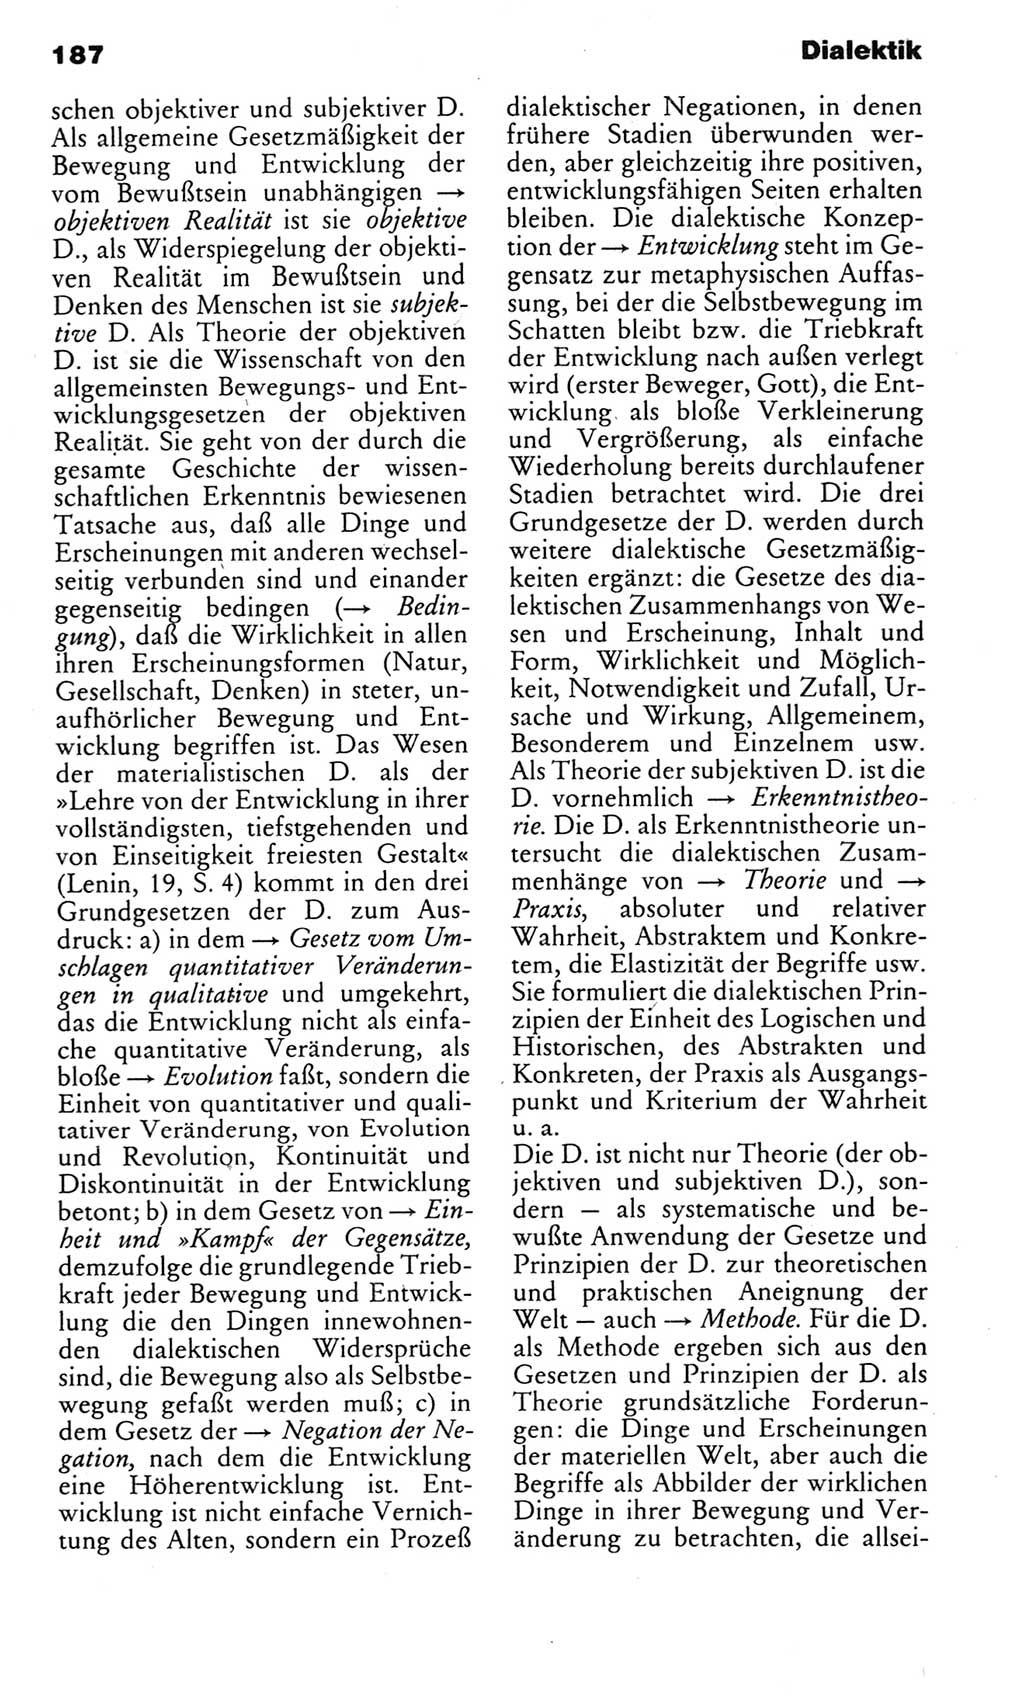 Kleines politisches Wörterbuch [Deutsche Demokratische Republik (DDR)] 1985, Seite 187 (Kl. pol. Wb. DDR 1985, S. 187)